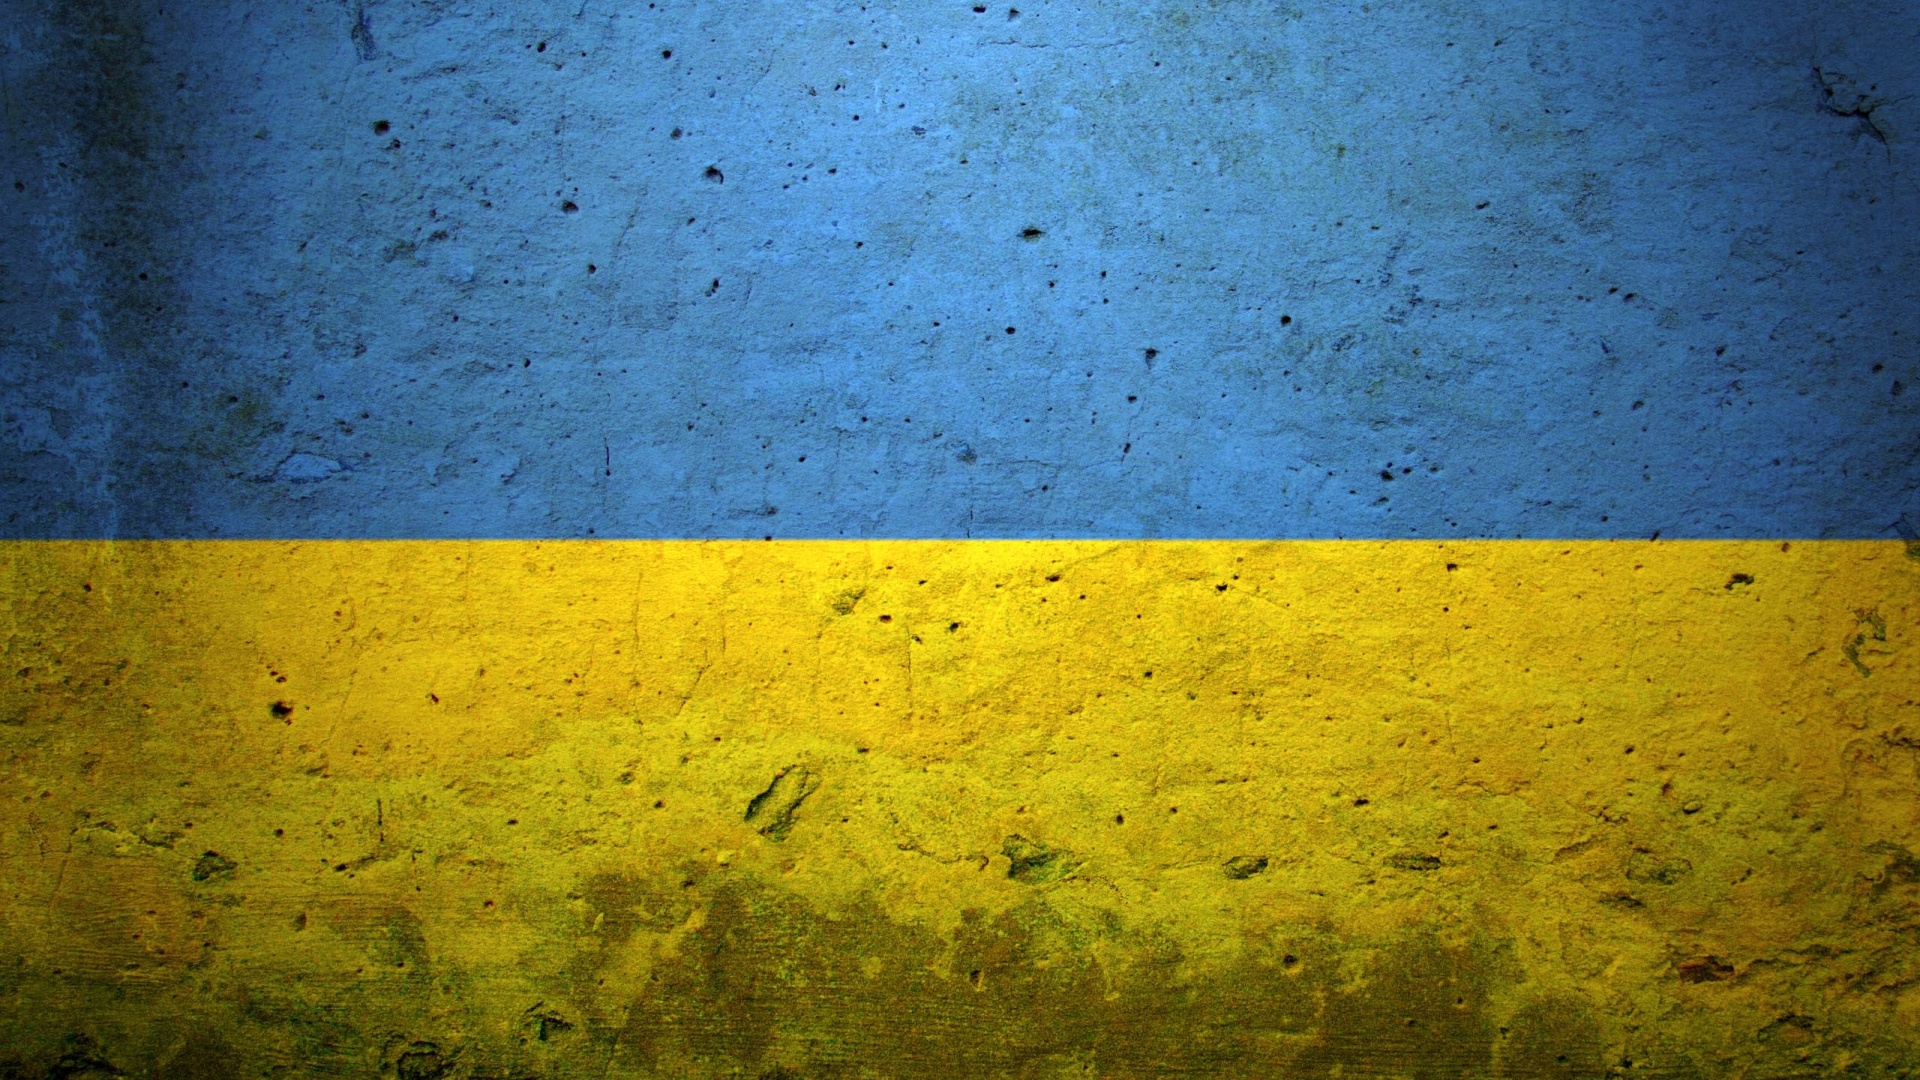 67991 Ukraine Wallpaper Images Stock Photos  Vectors  Shutterstock